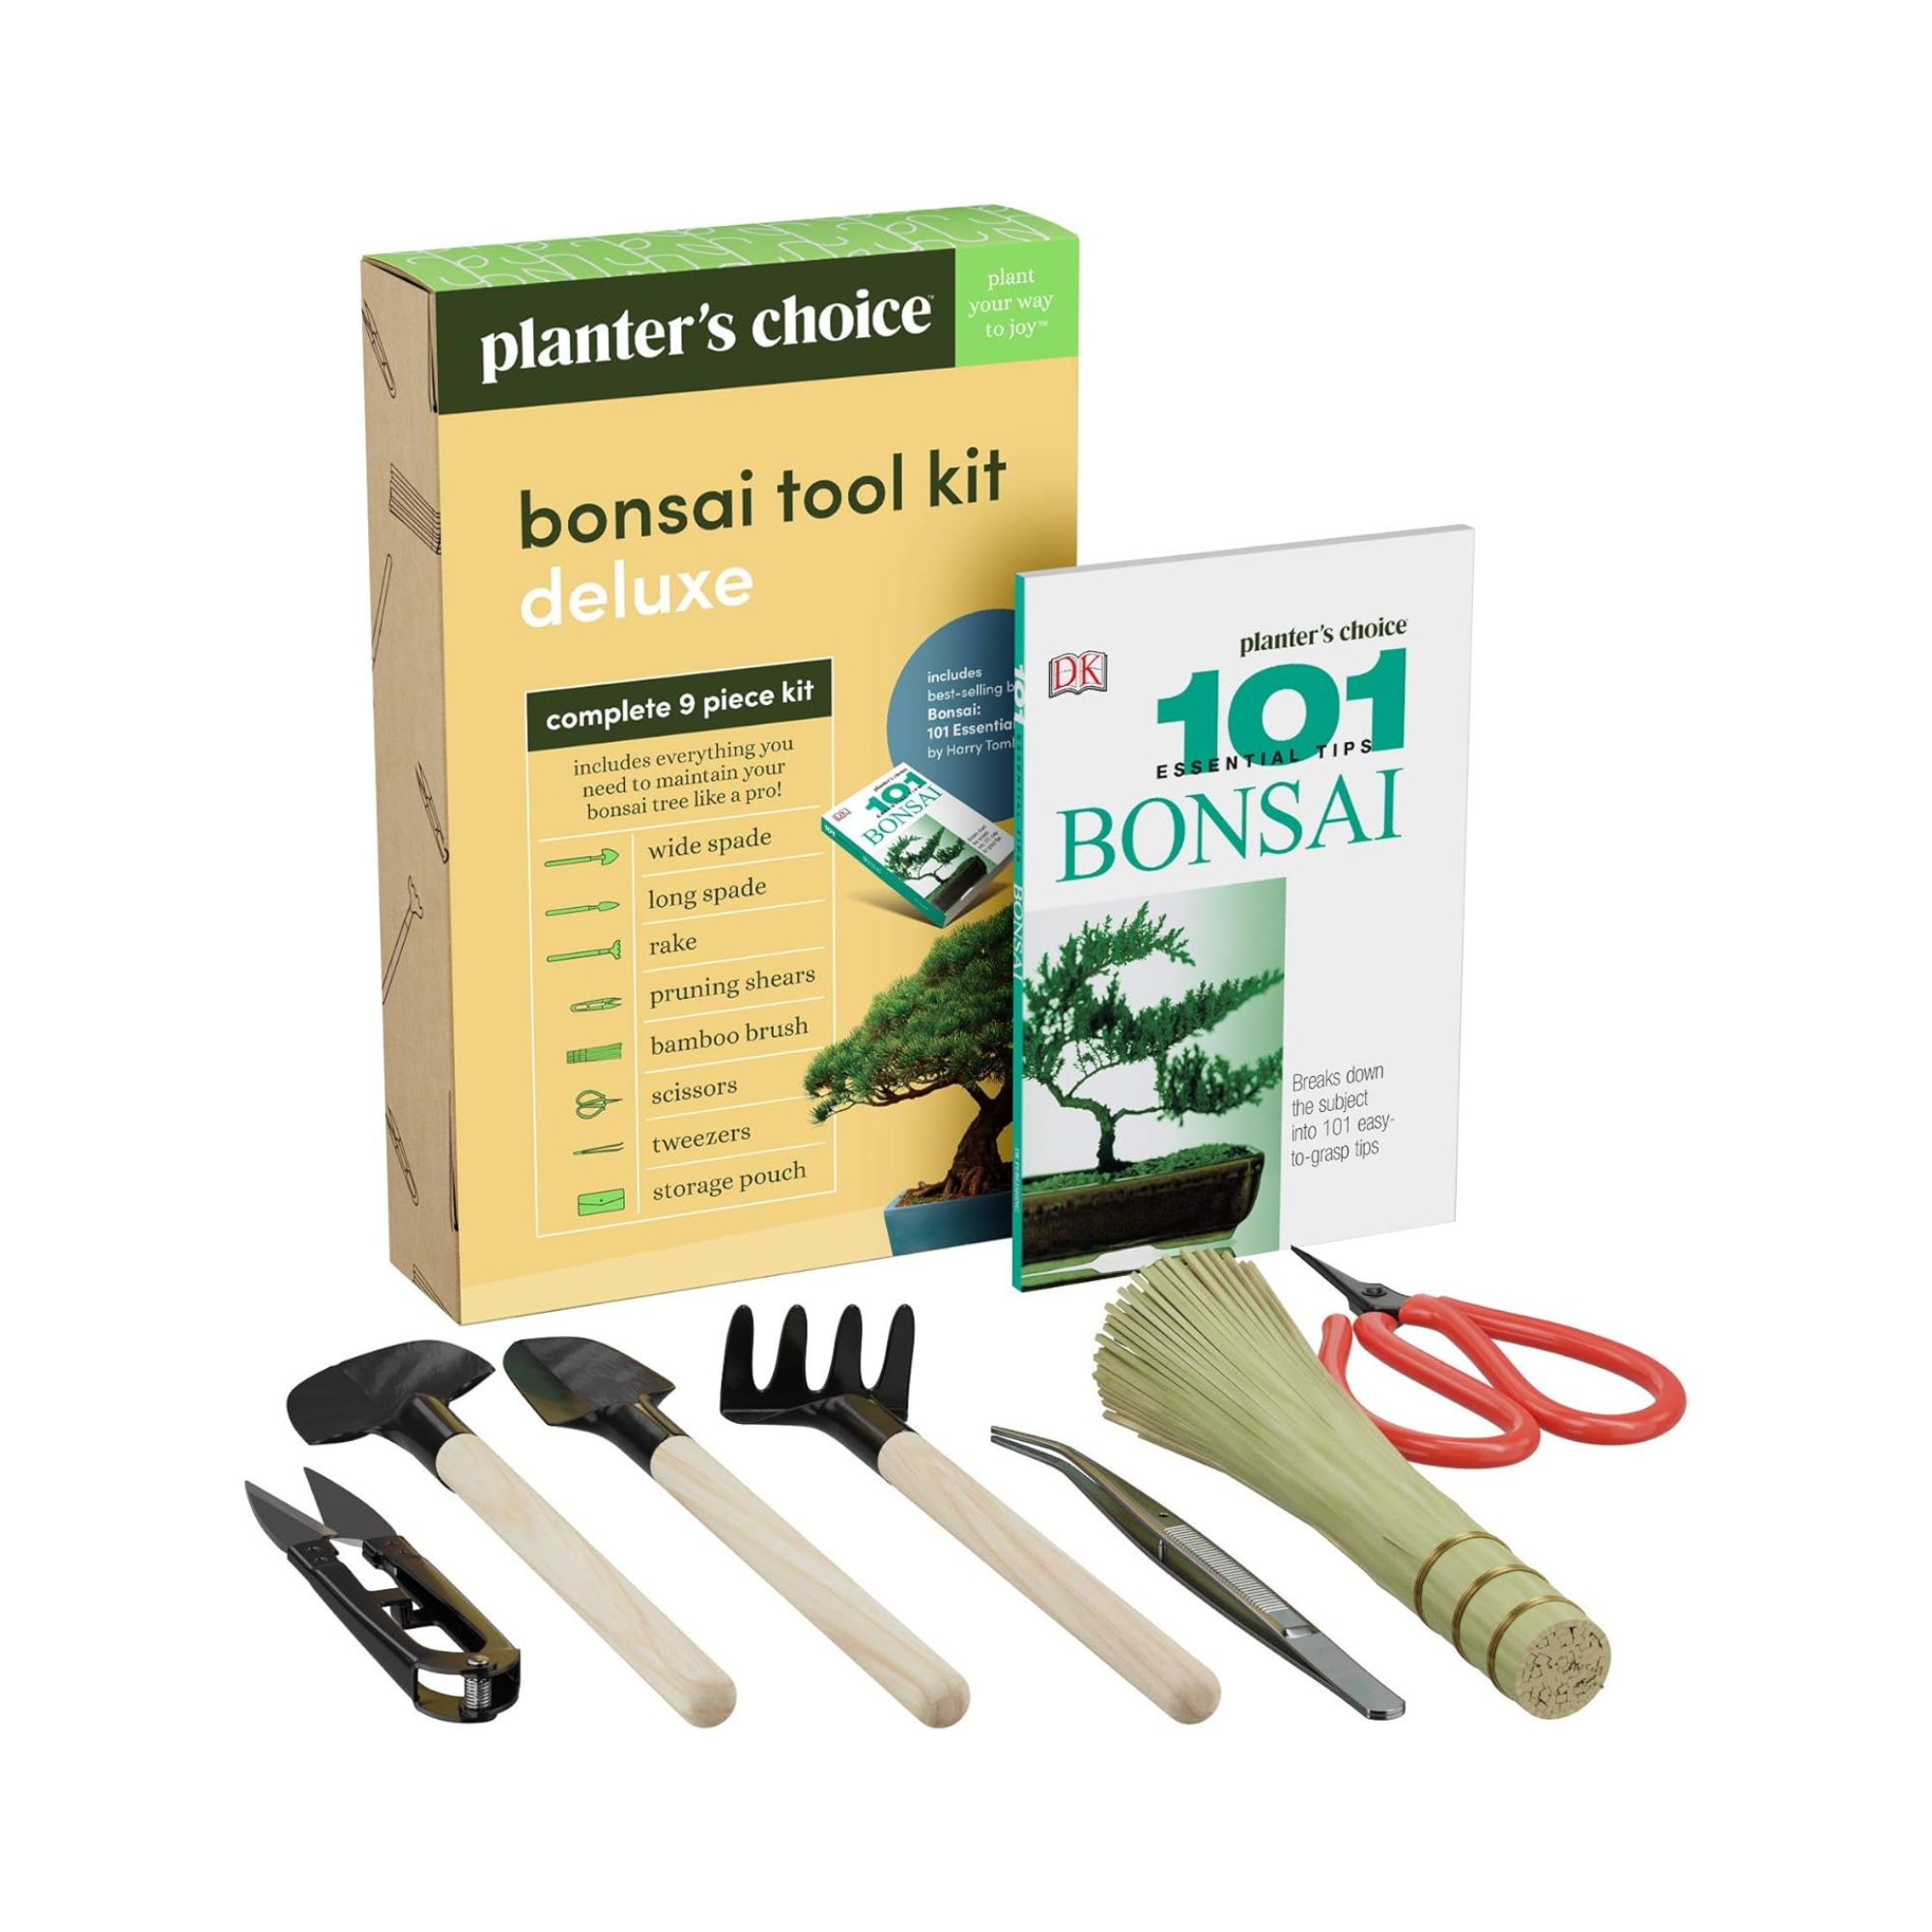 A bonsai tool kit